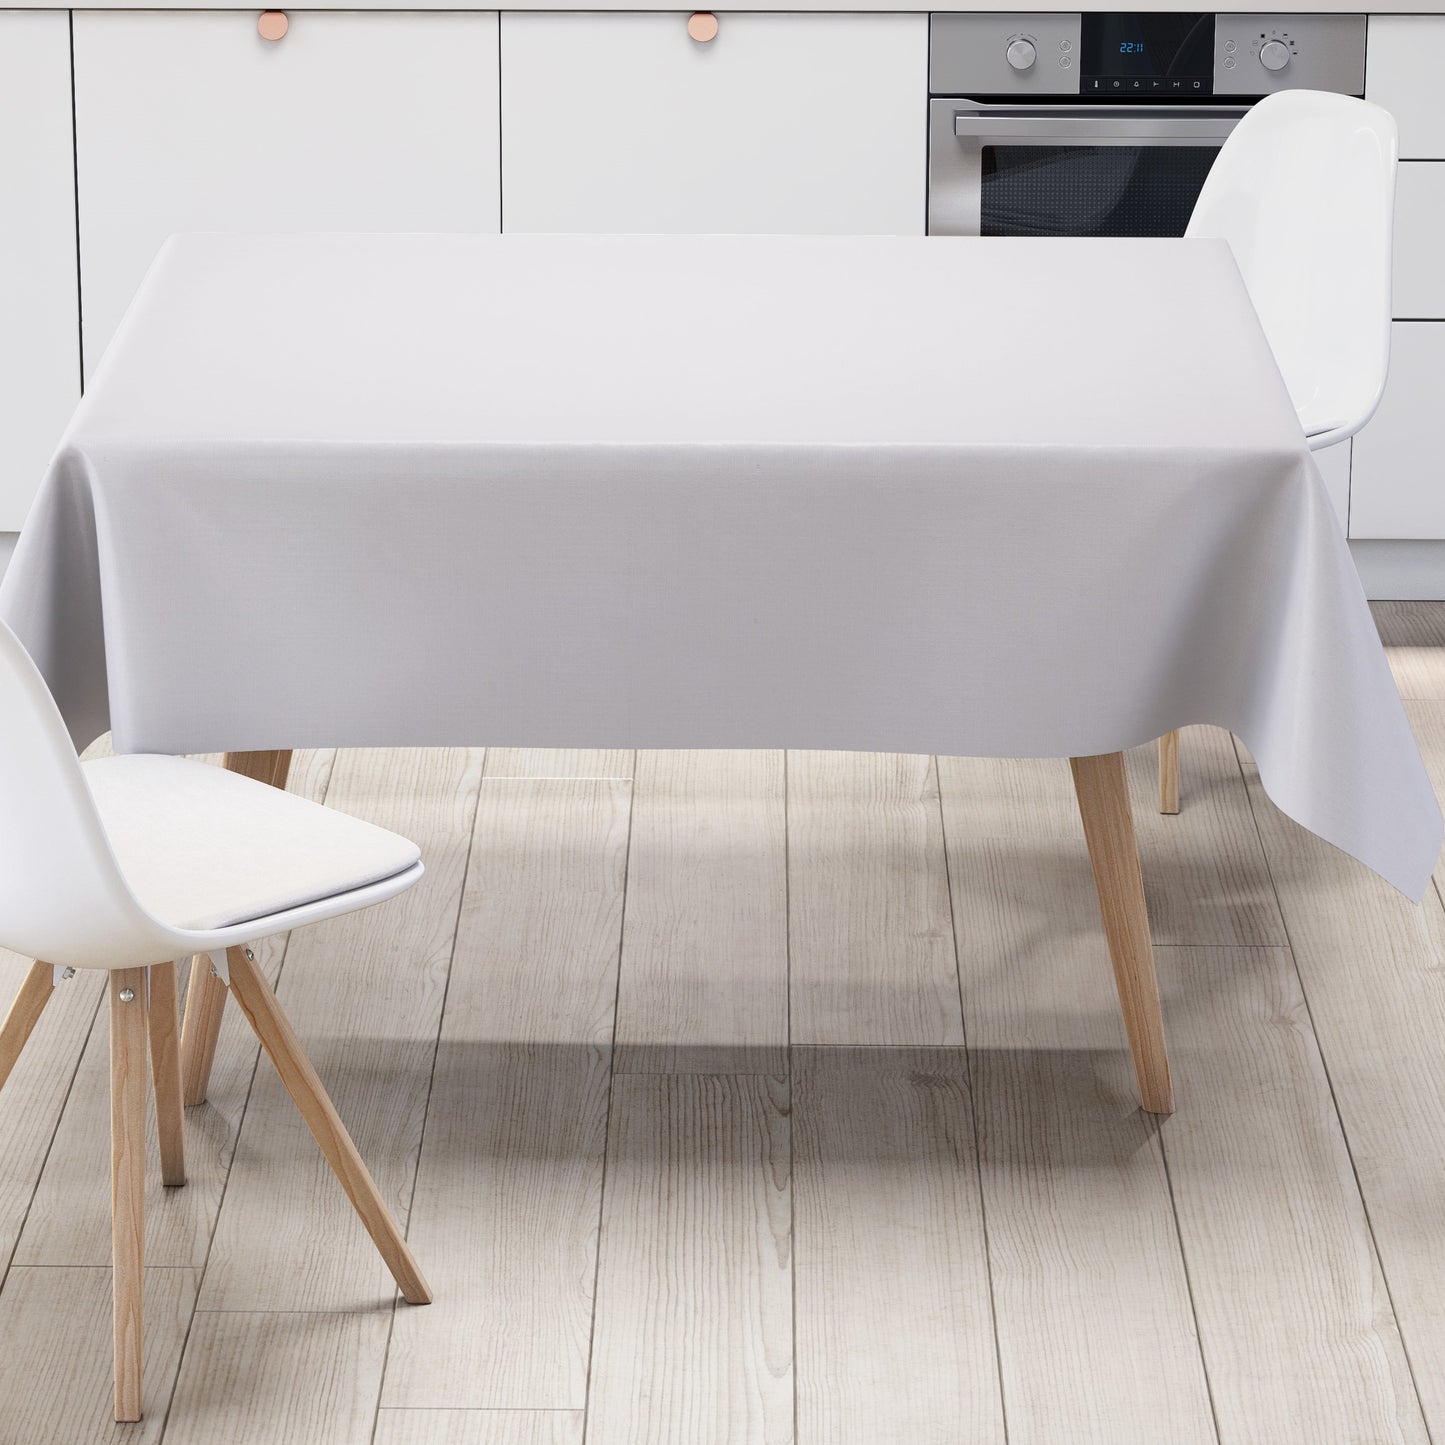 KEVKUS Wachstuch Tischdecke uni 0 Weiß einfarbig wählbar in eckig, rund und oval -